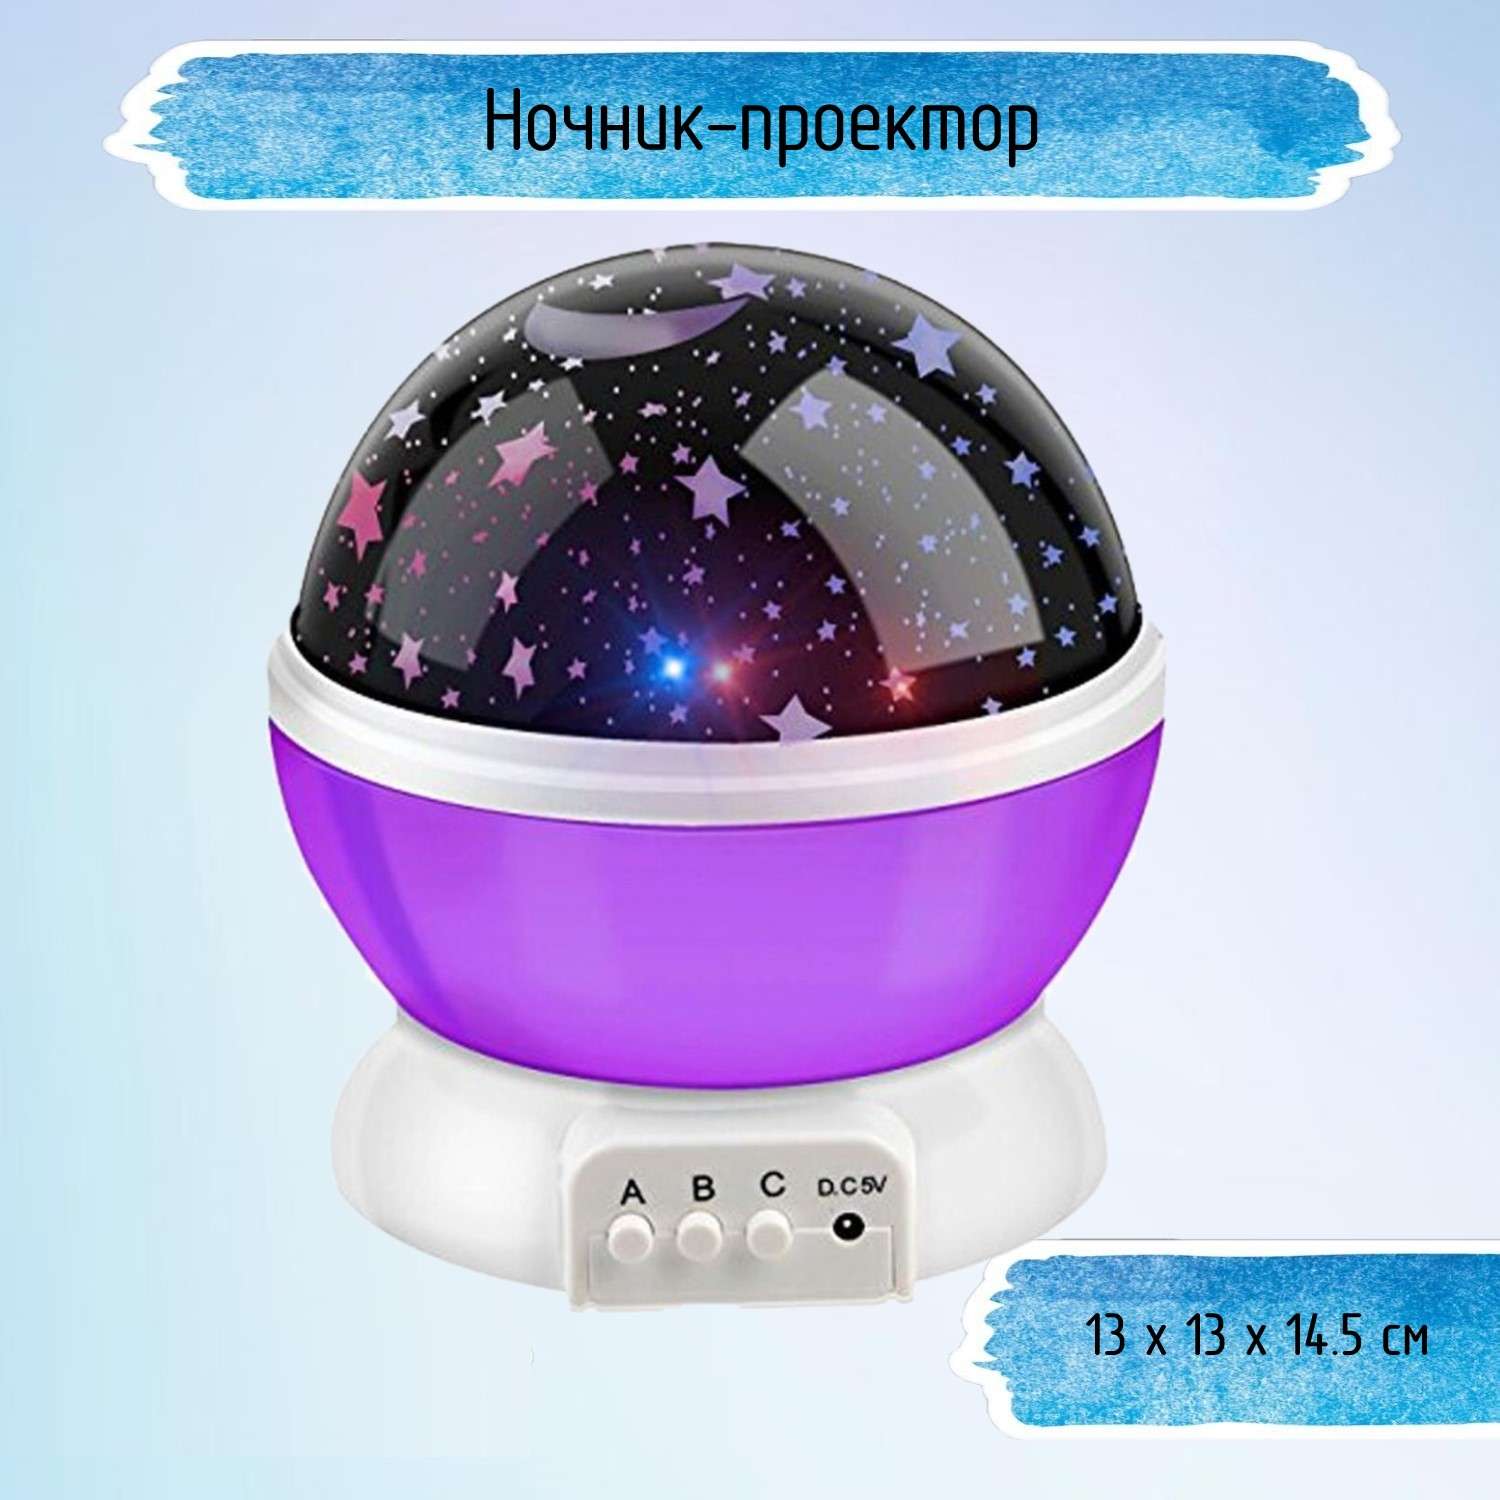 Ночник-проектор Uniglodis Sky Star Master фиолетовый - фото 1